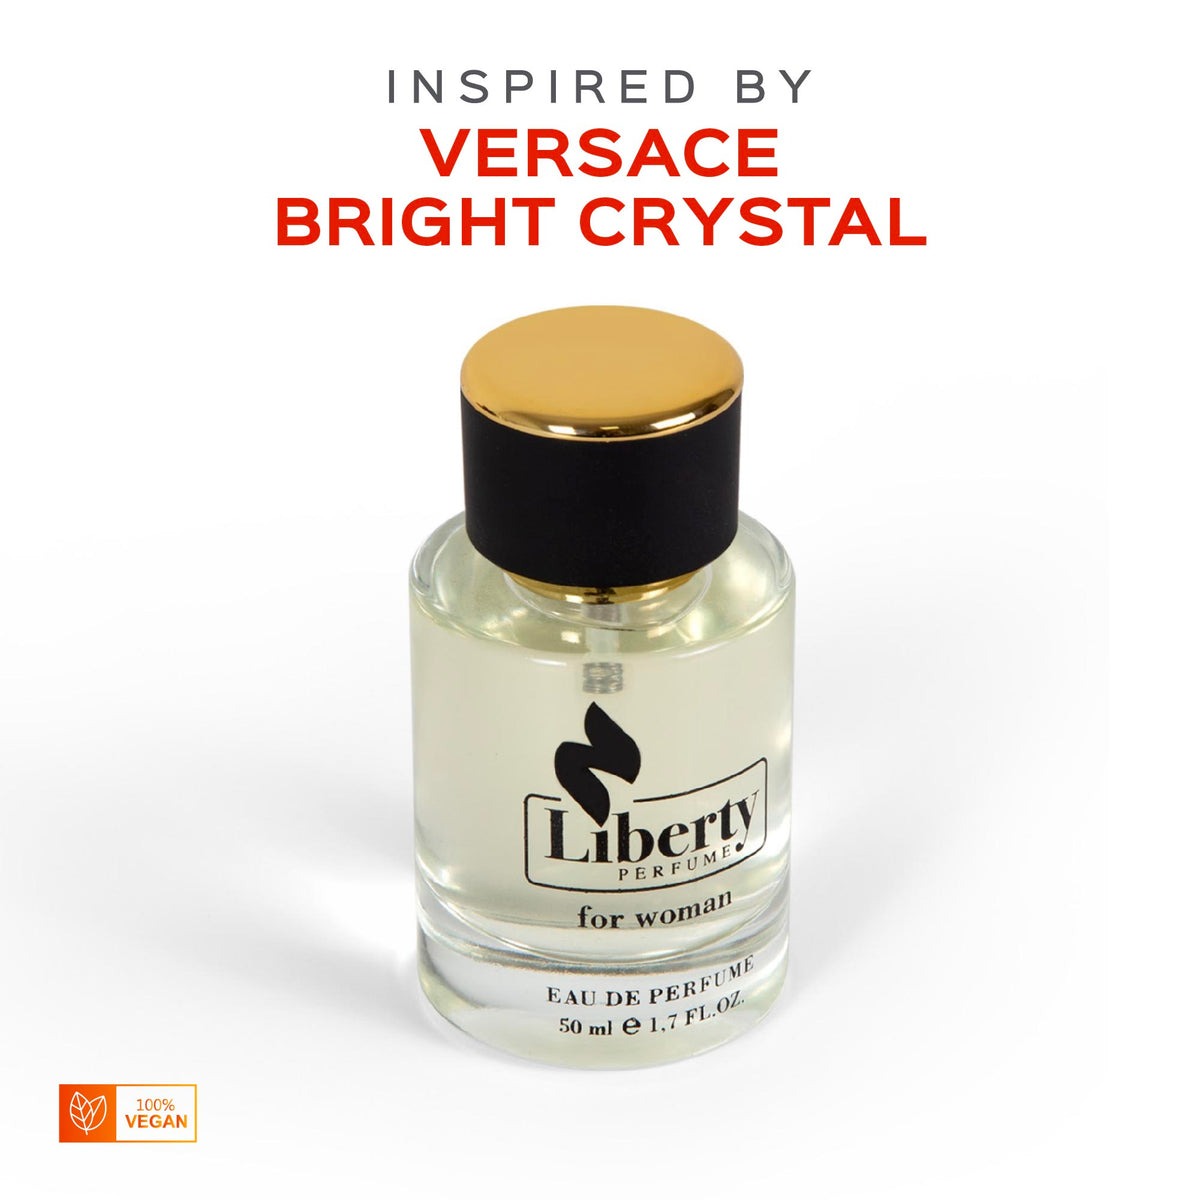 Versace Bright Crystal - Scented Deodorant Spray